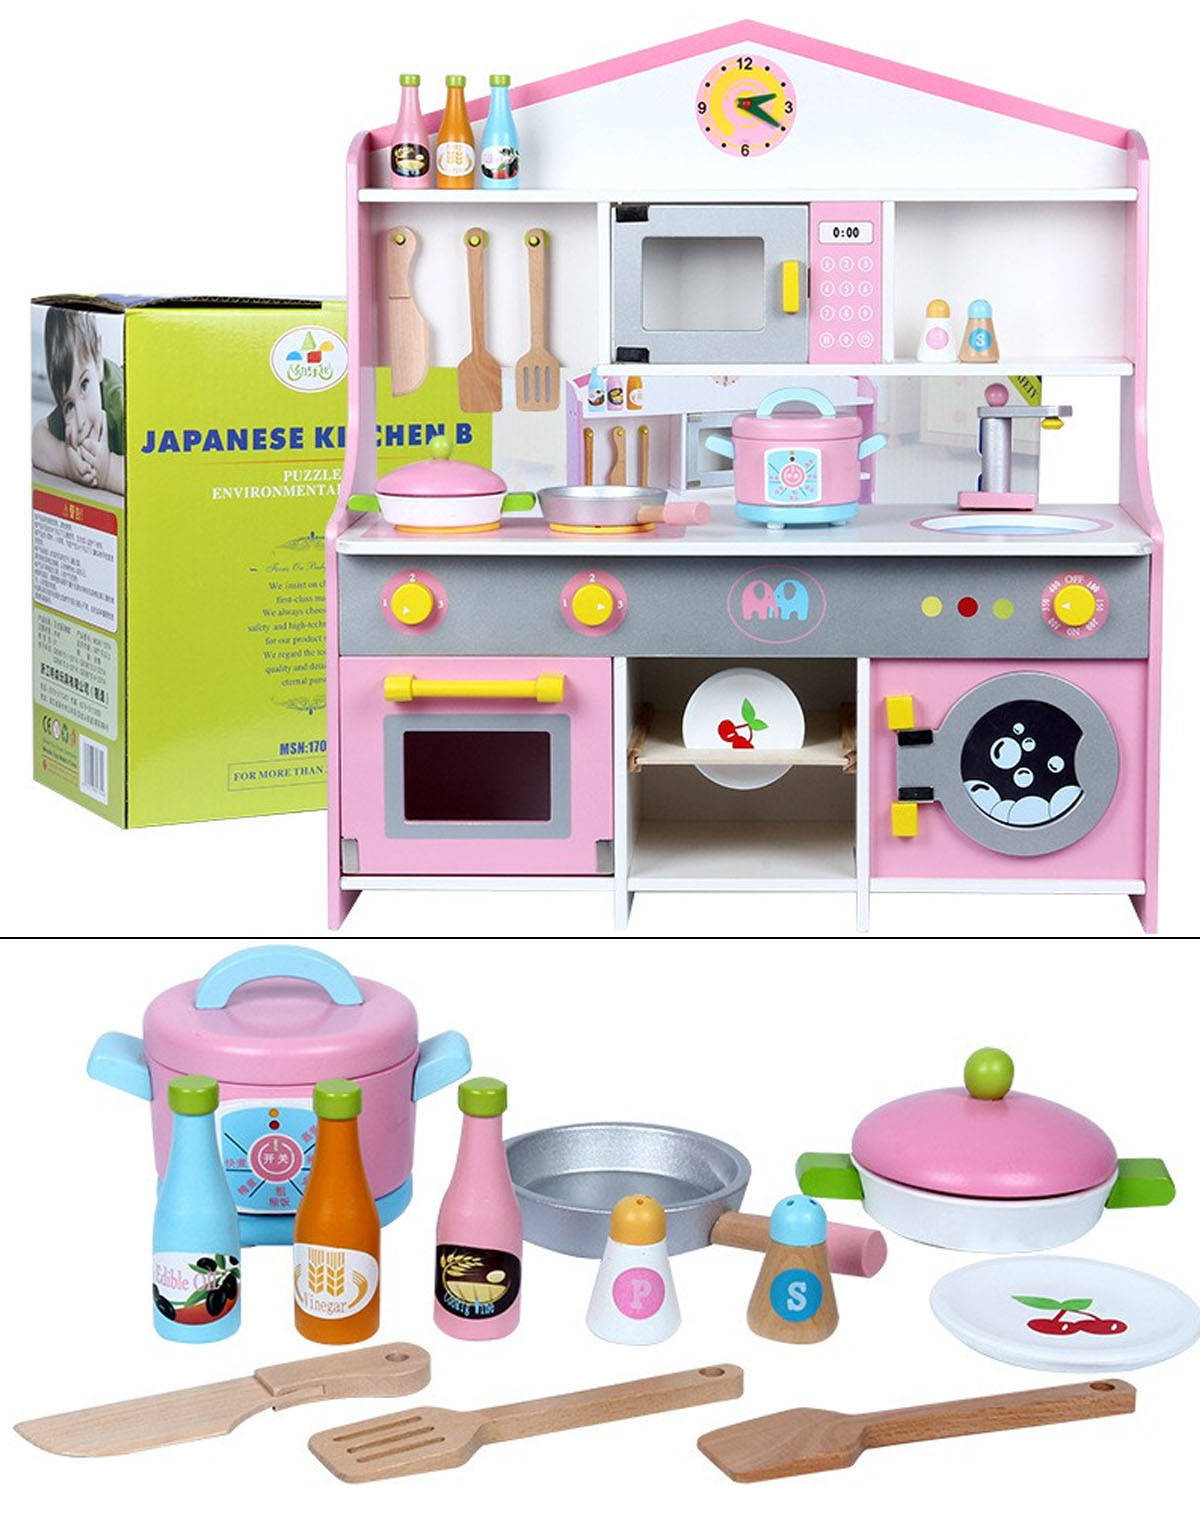 Bộ đồ chơi nhà bếp nấu ăn phù hợp cho các bé từ 3 tuổi